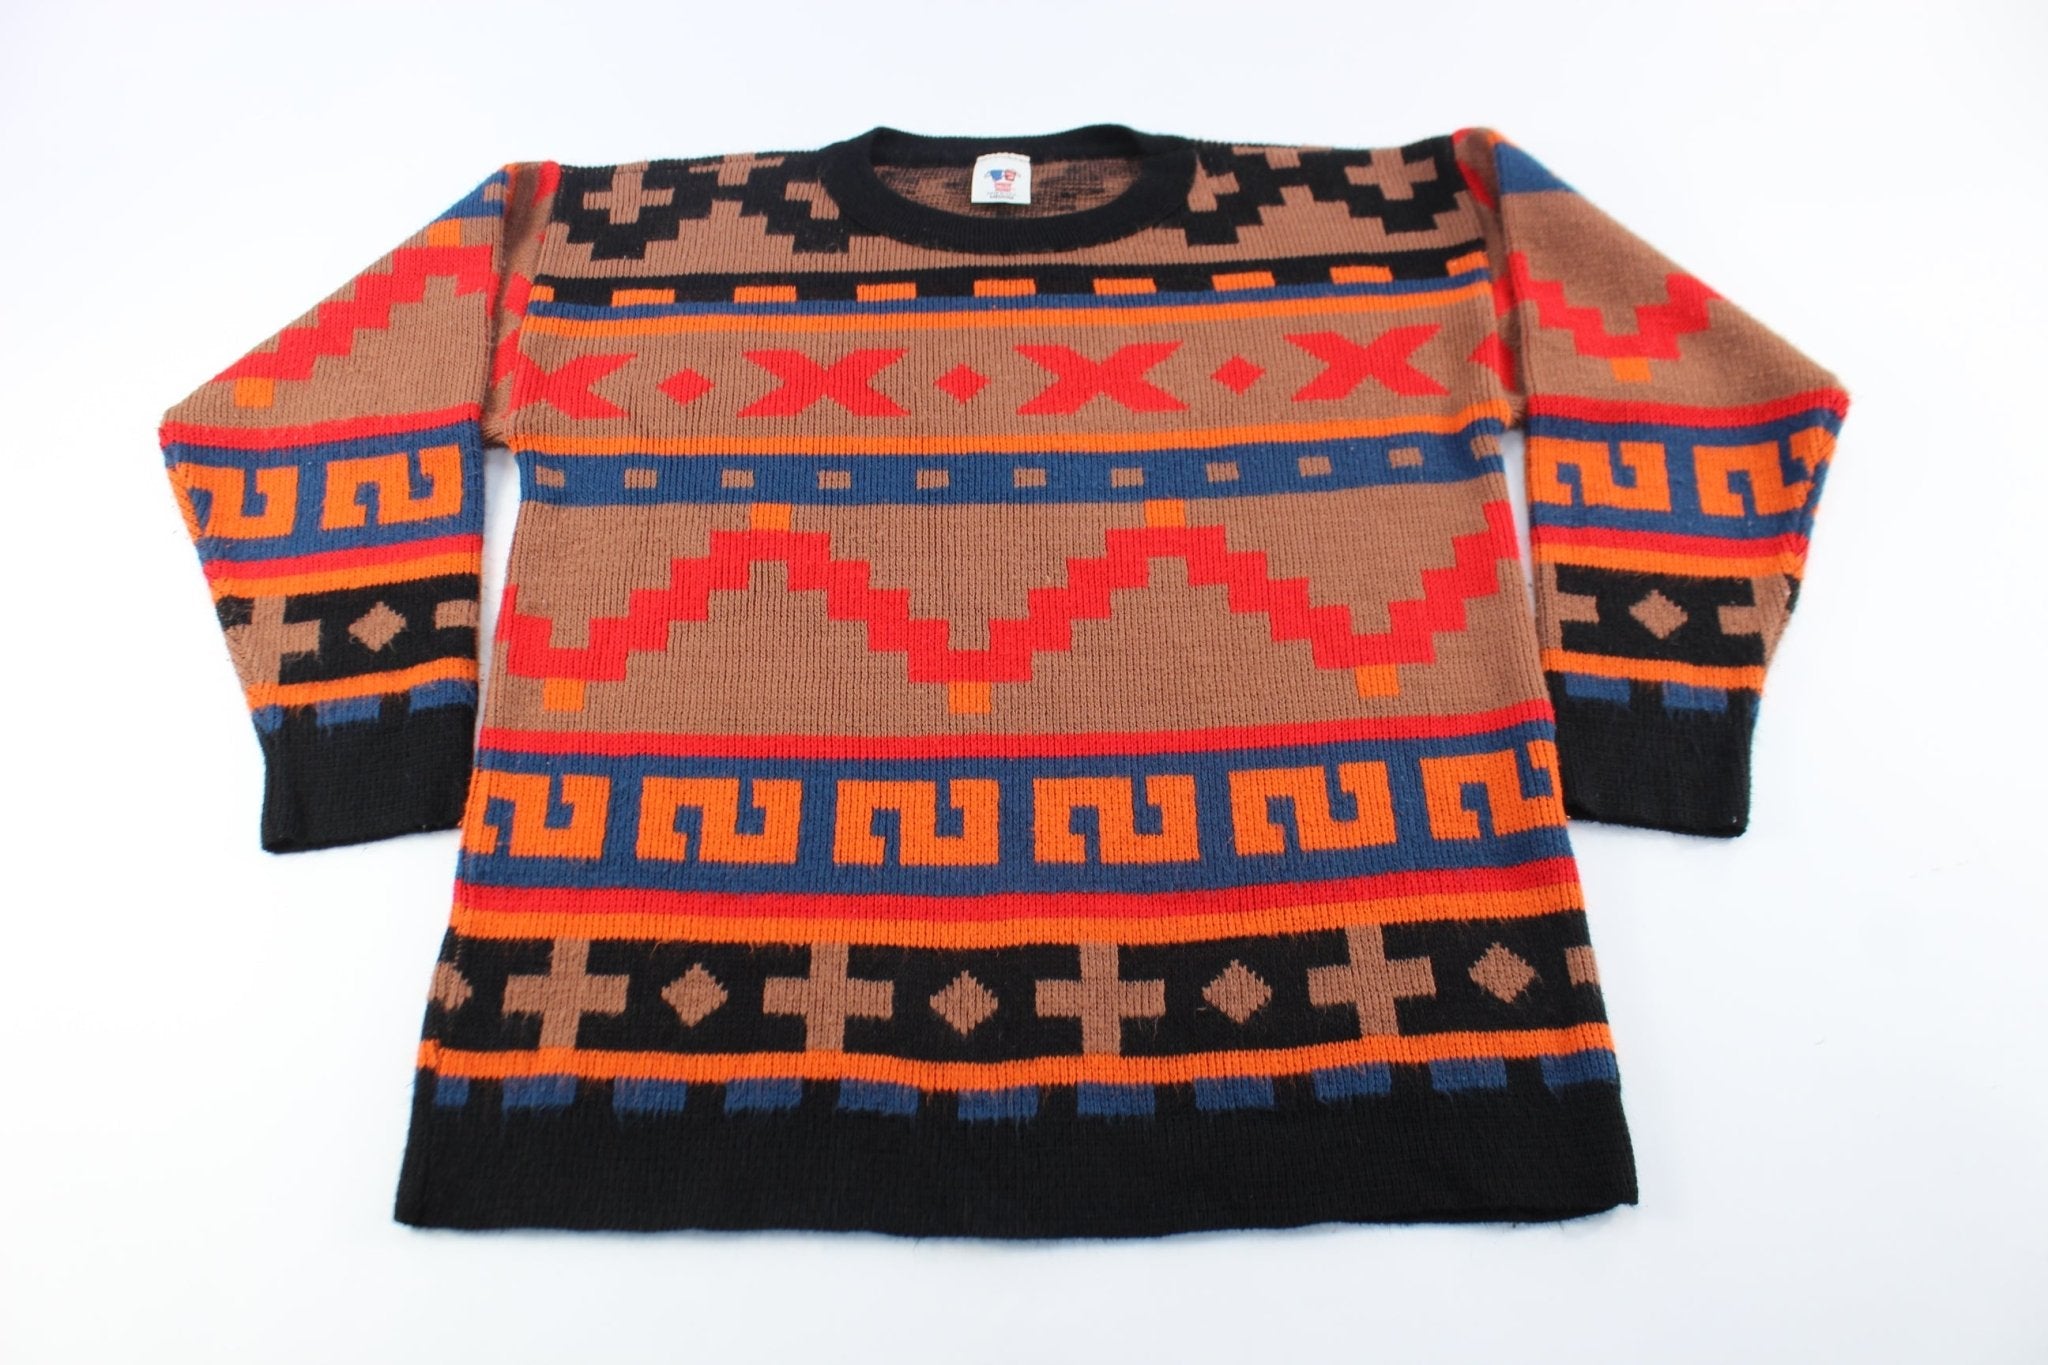 90's Sweater Bazaar Patterned Sweater - ThriftedThreads.com